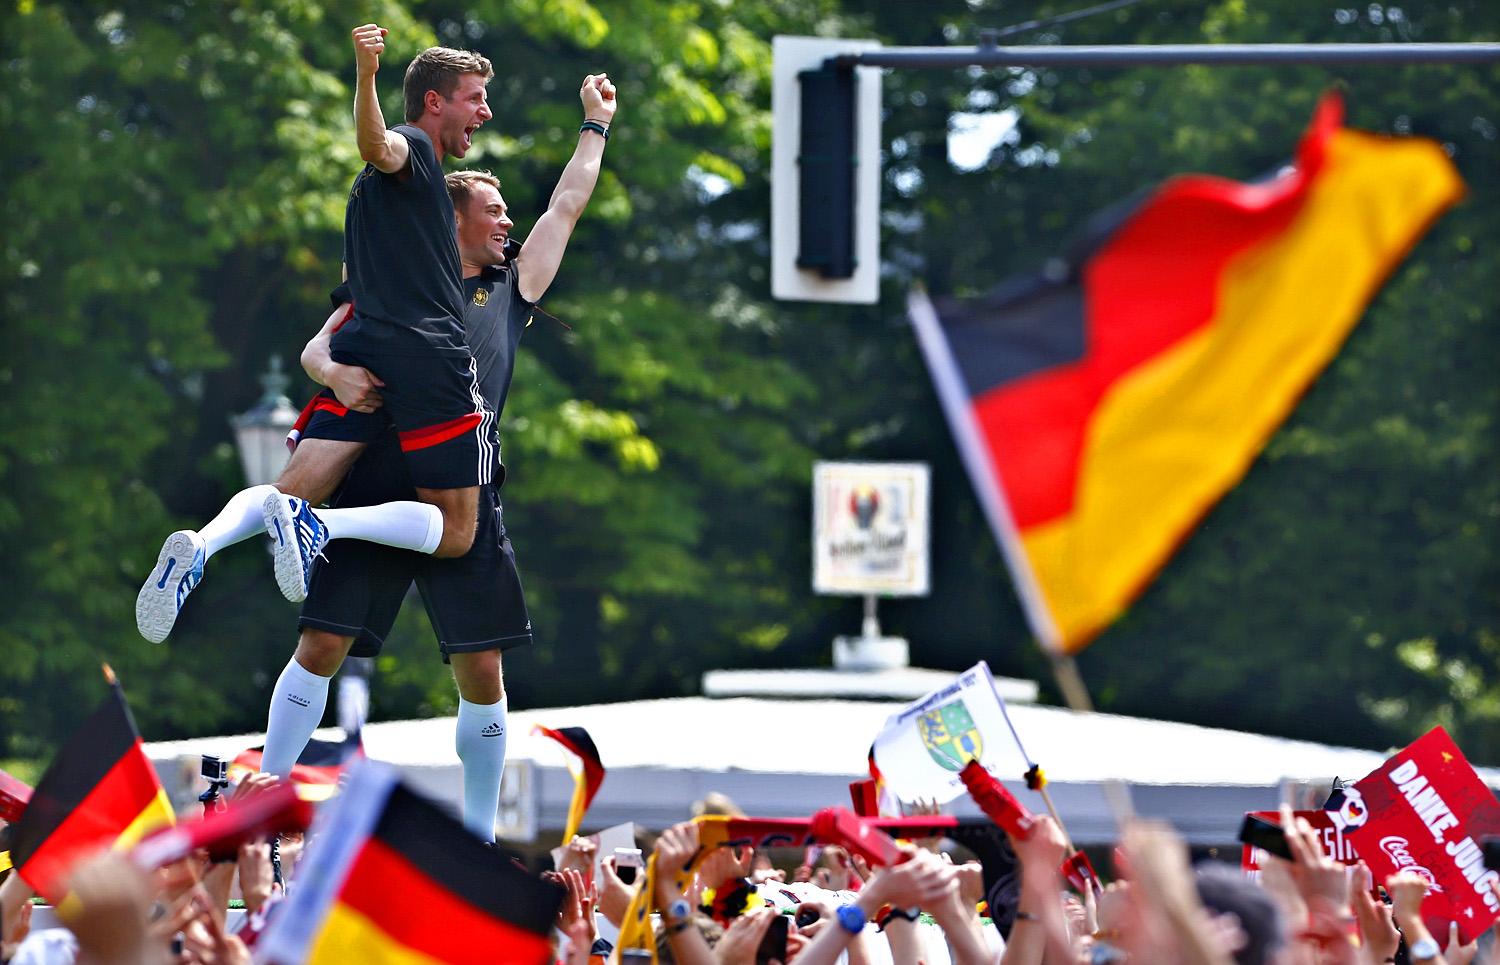 Neuer kapus emeli magasba Müllert a berlini győzelmi parádén